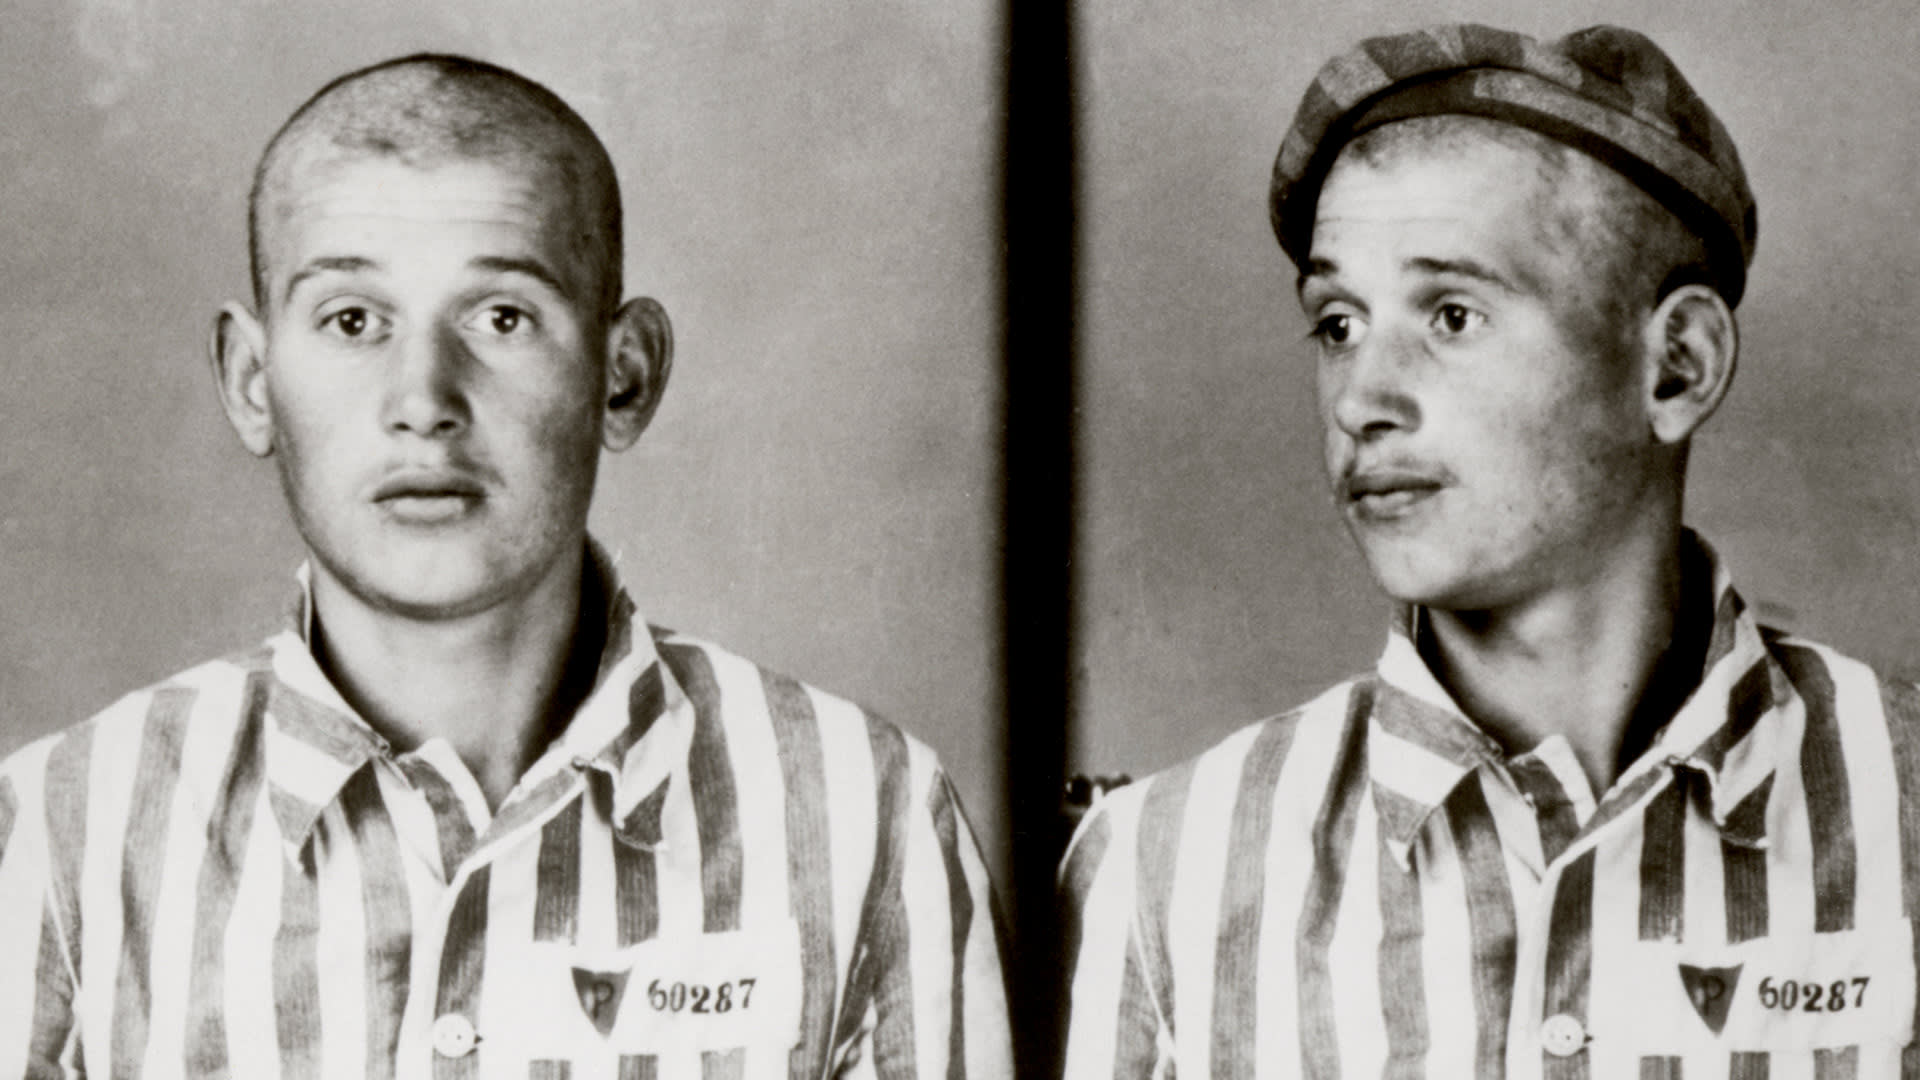 Fotka vězně v Osvětimi